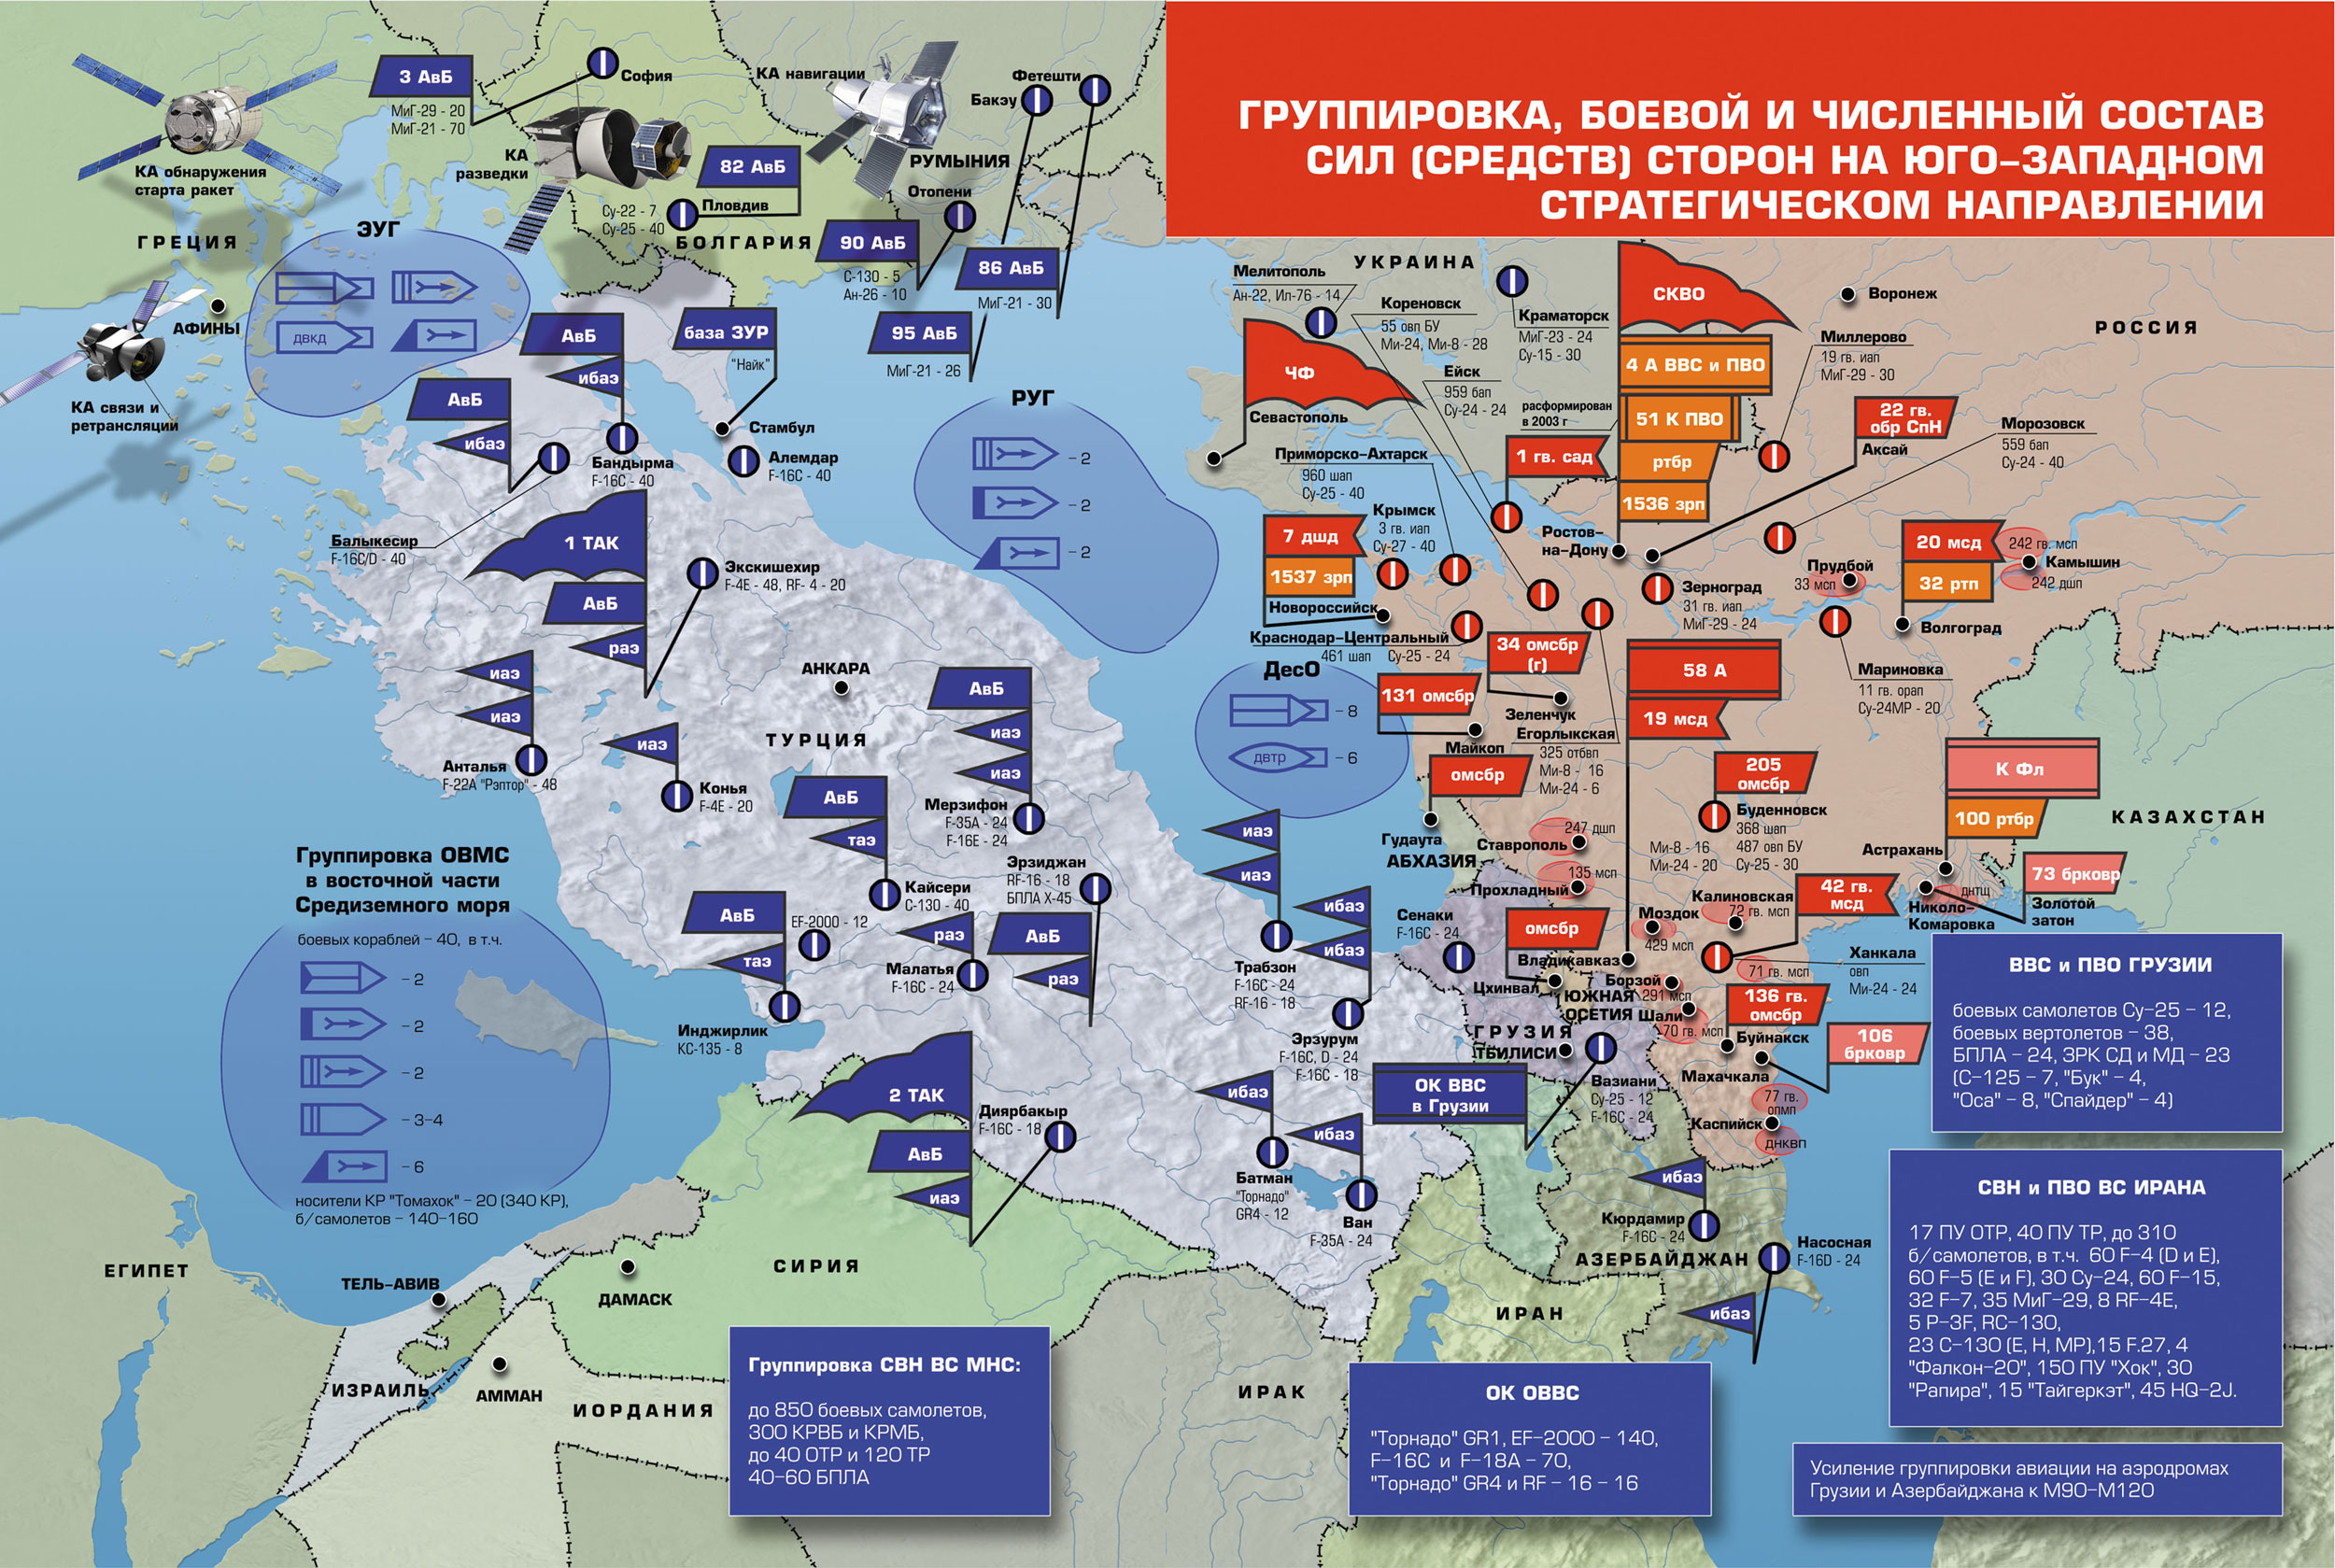 Численность нато в европе. ПВО НАТО В Европе на карте. Военные базы НАТО В Европе на карте. Карта размещения войск НАТО В Европе. Группировка войск НАТО на карте.